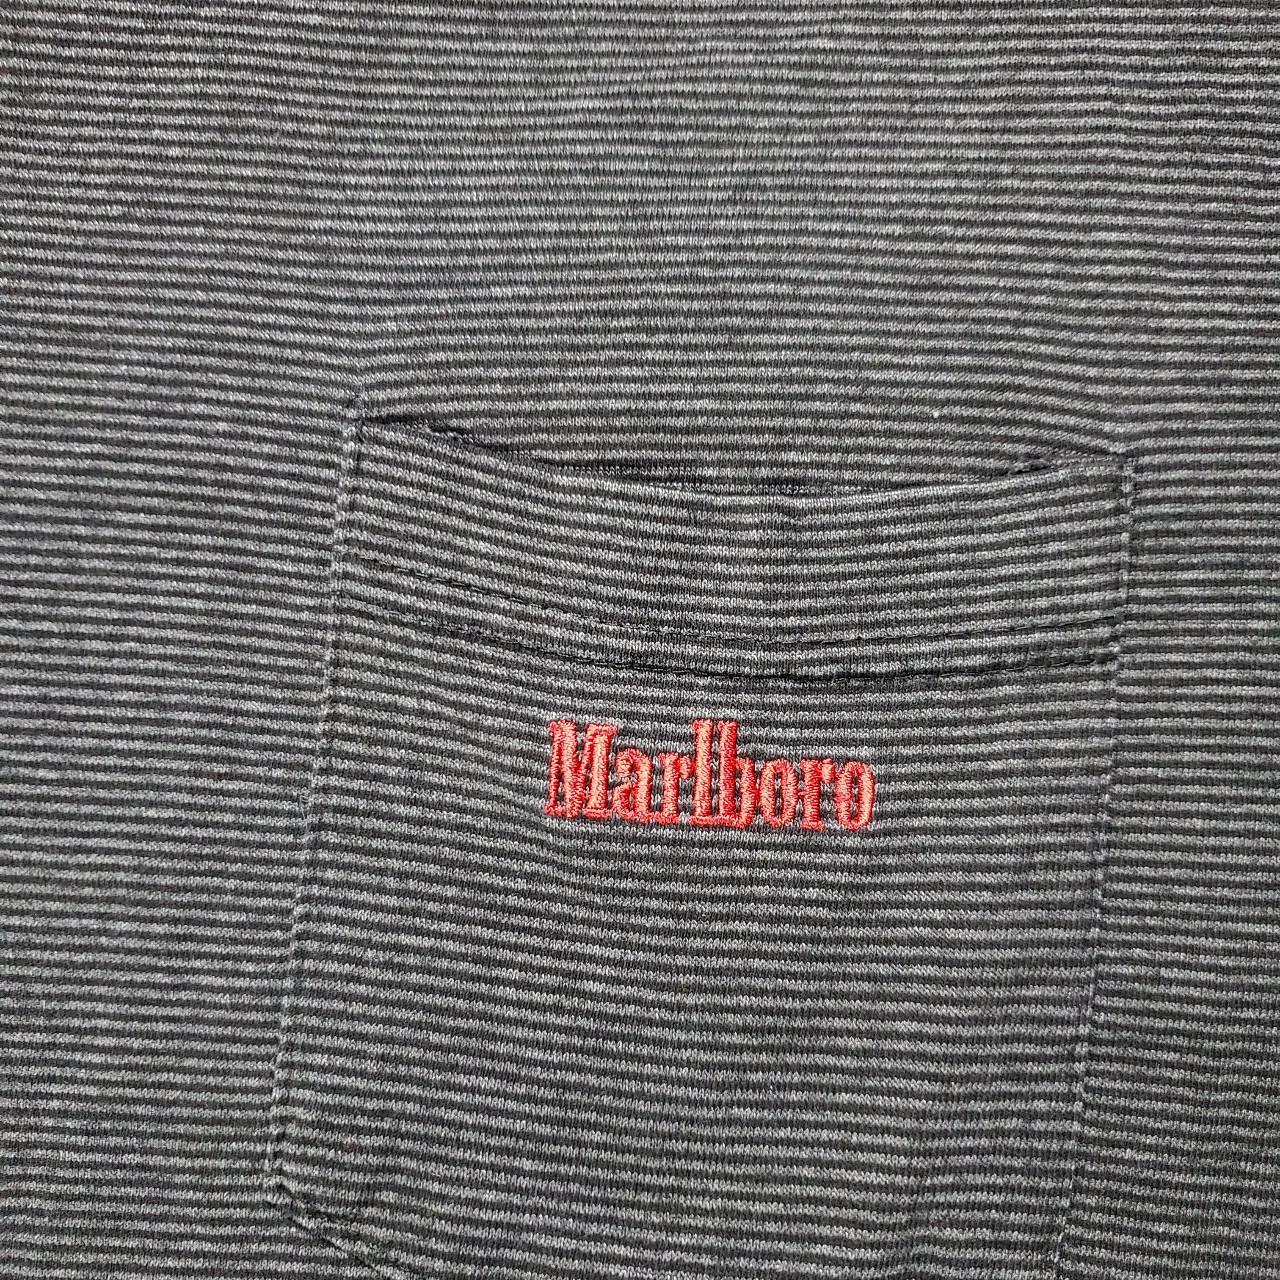 Product Image 2 - Vintage Stitched Marlboro Pocket TShirt

No